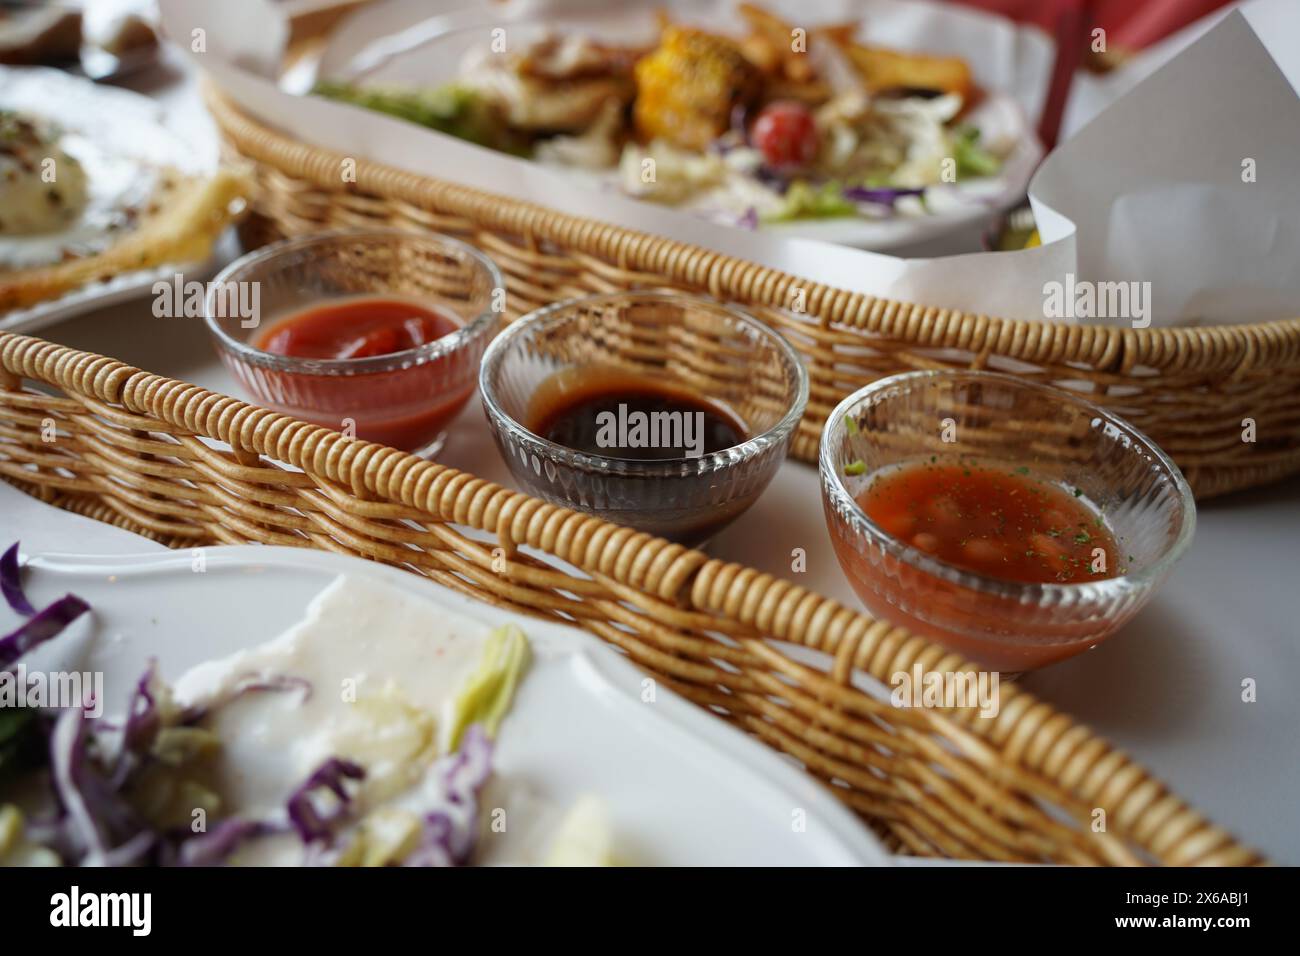 Nourriture du restaurant dans un panier en osier avec des sauces sur la table Banque D'Images